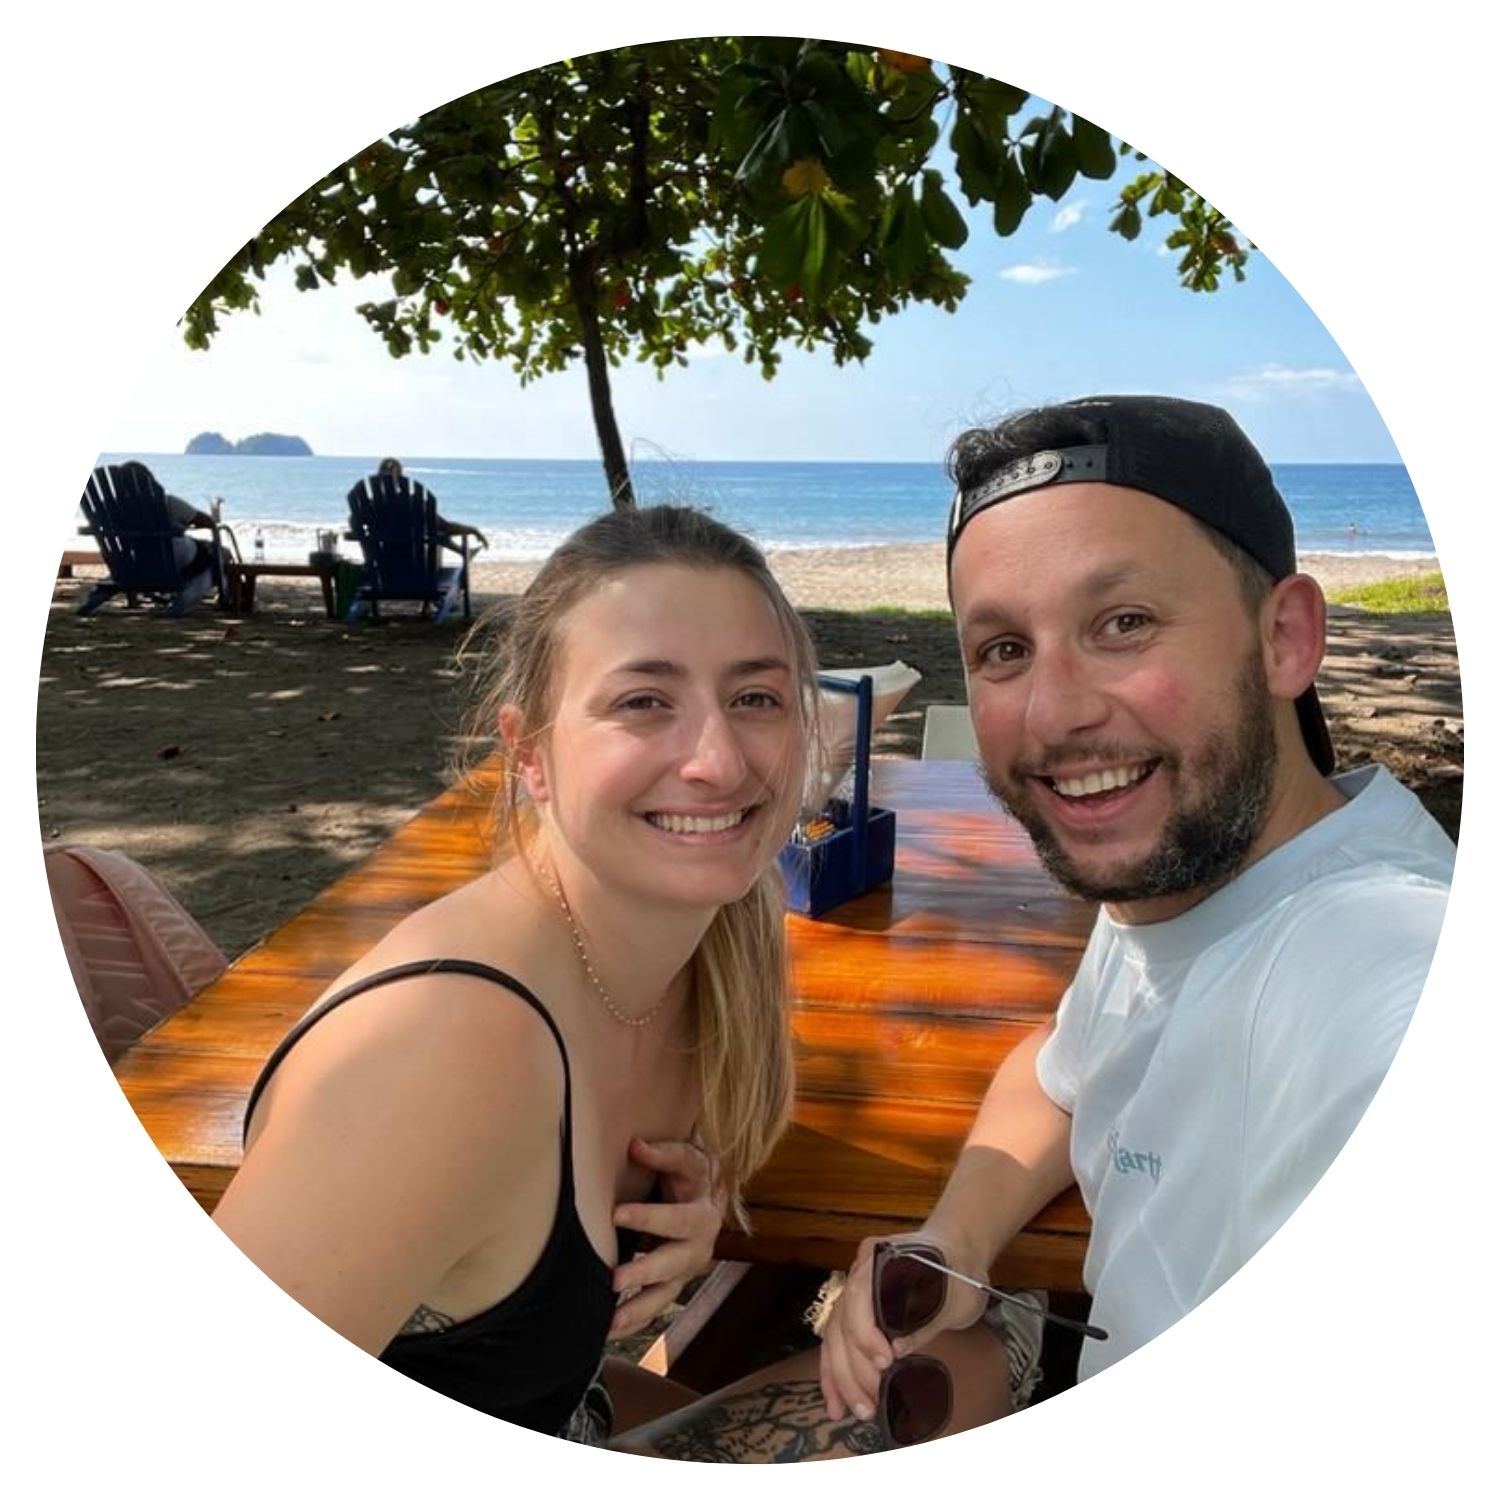 Explorez le Costa Rica avec un voyage sur mesure recommandé par Rebecca. Découvrez des plages paradisiaques, une nature luxuriante et des expériences inoubliables pour deux personnes.